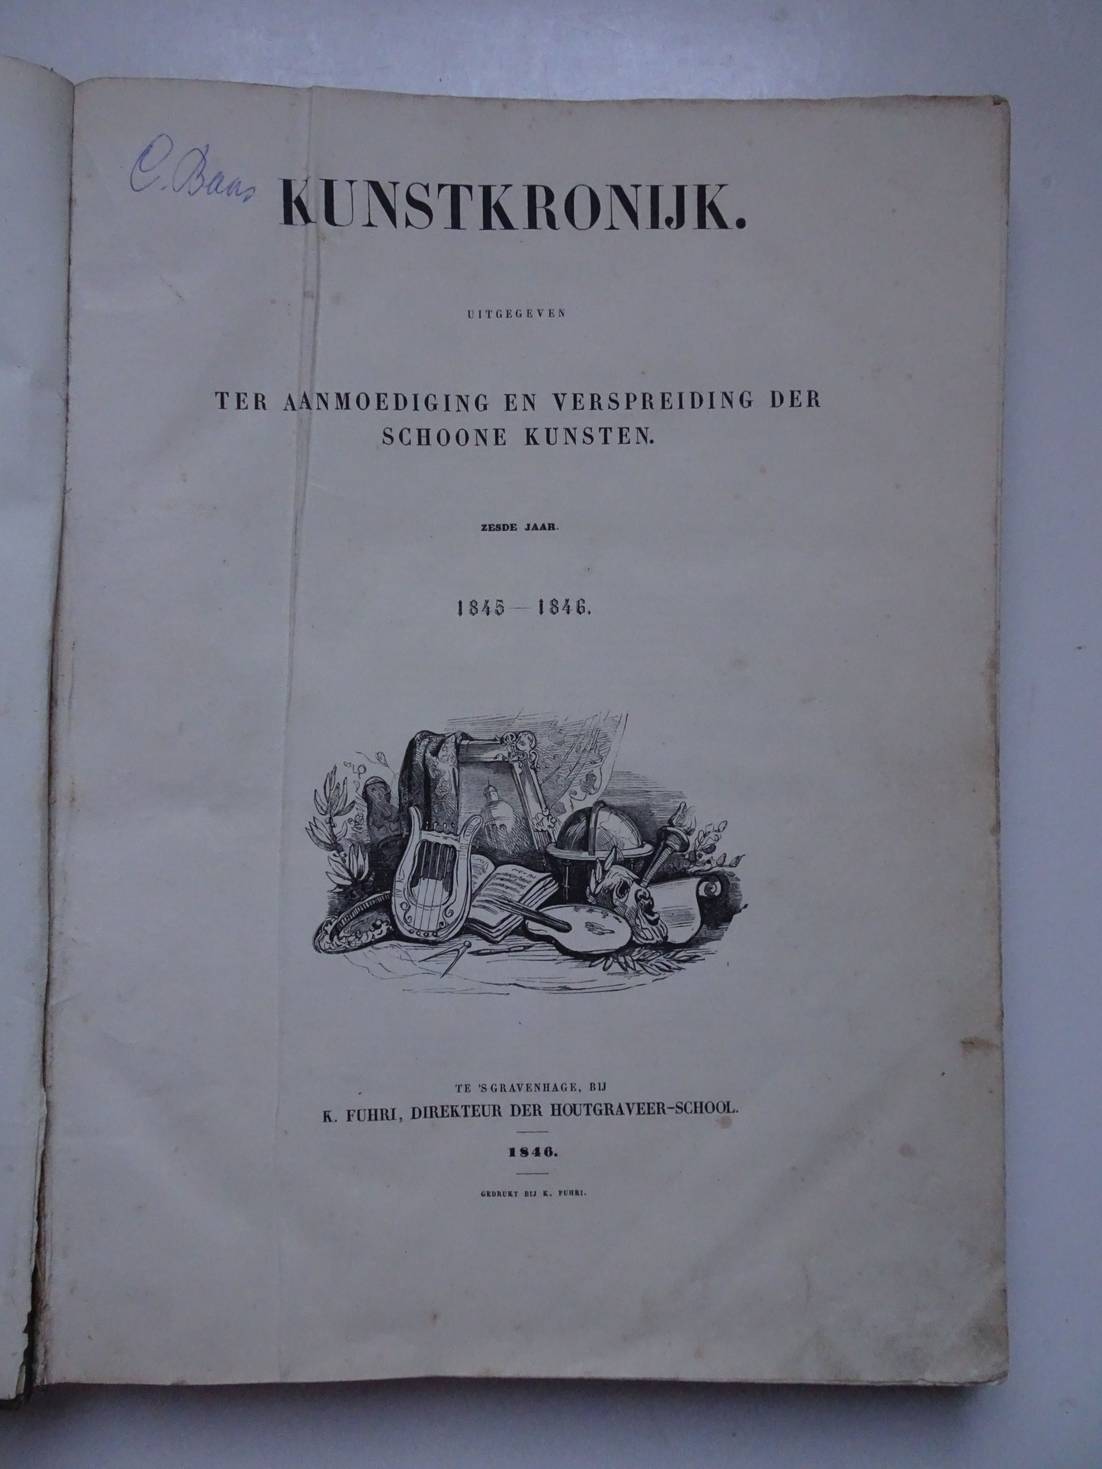 -. - Kunstkronijk uitgegeven ter aanmoediging en verspreiding der schoone kunsten. Zesde (1845-1846) en zevende (1846) jaar.